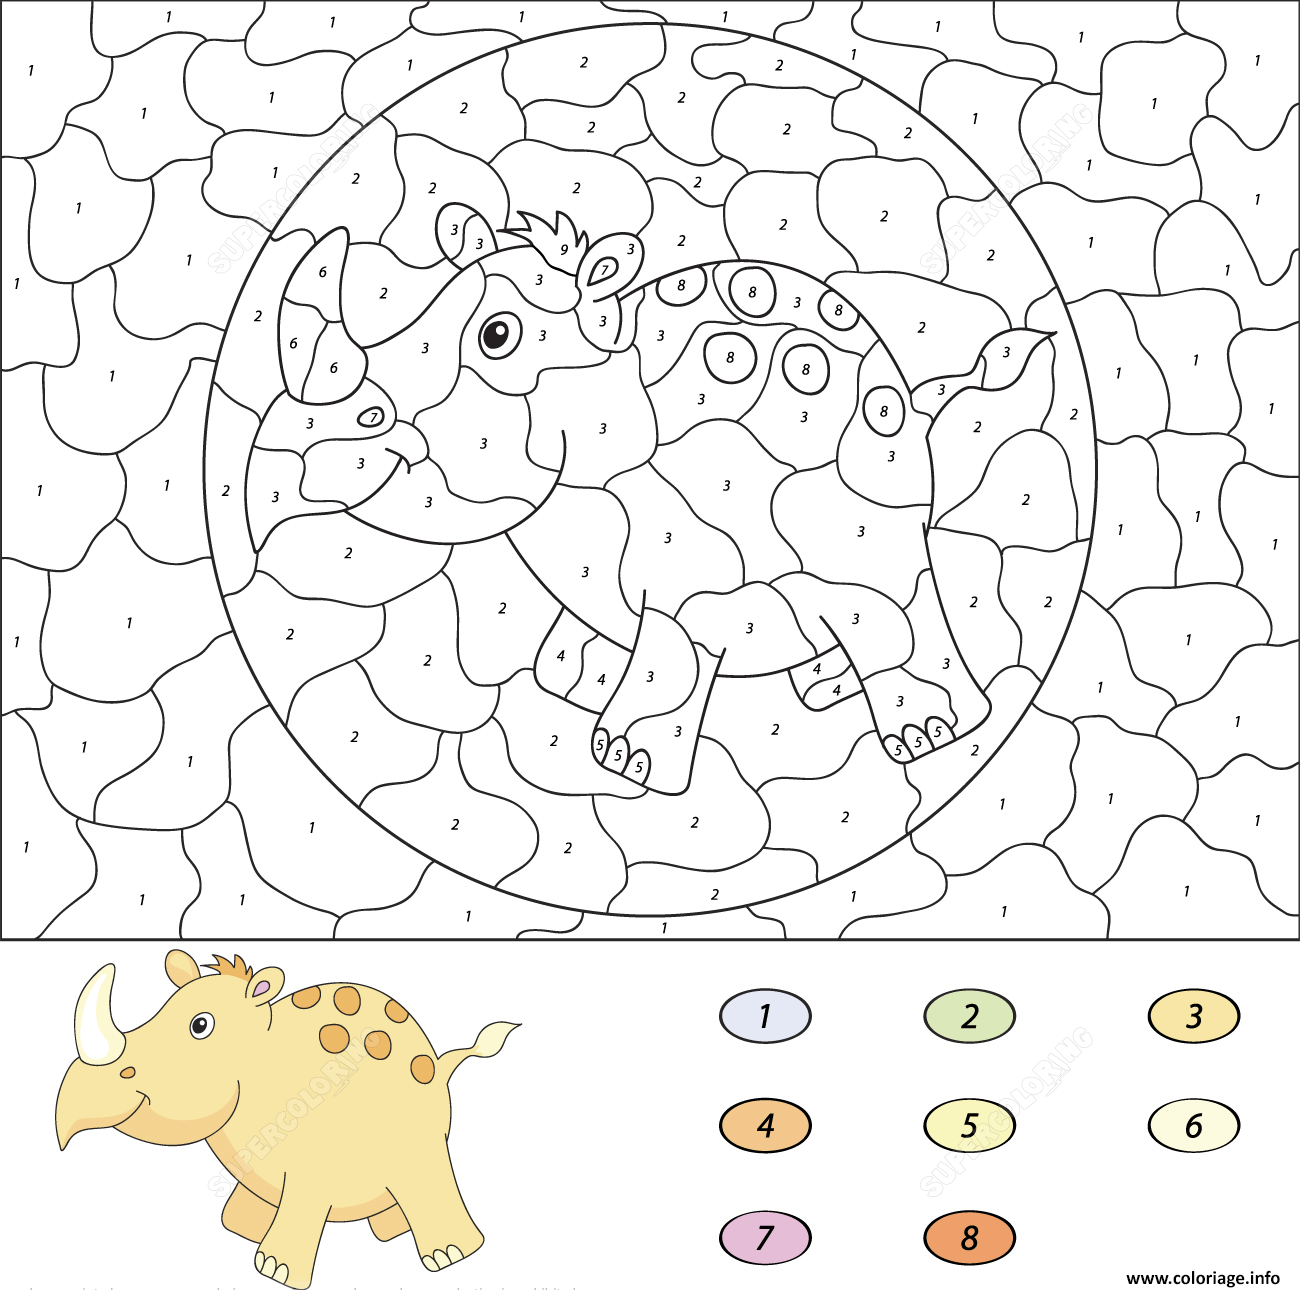 Coloriage cartoon rhino magique